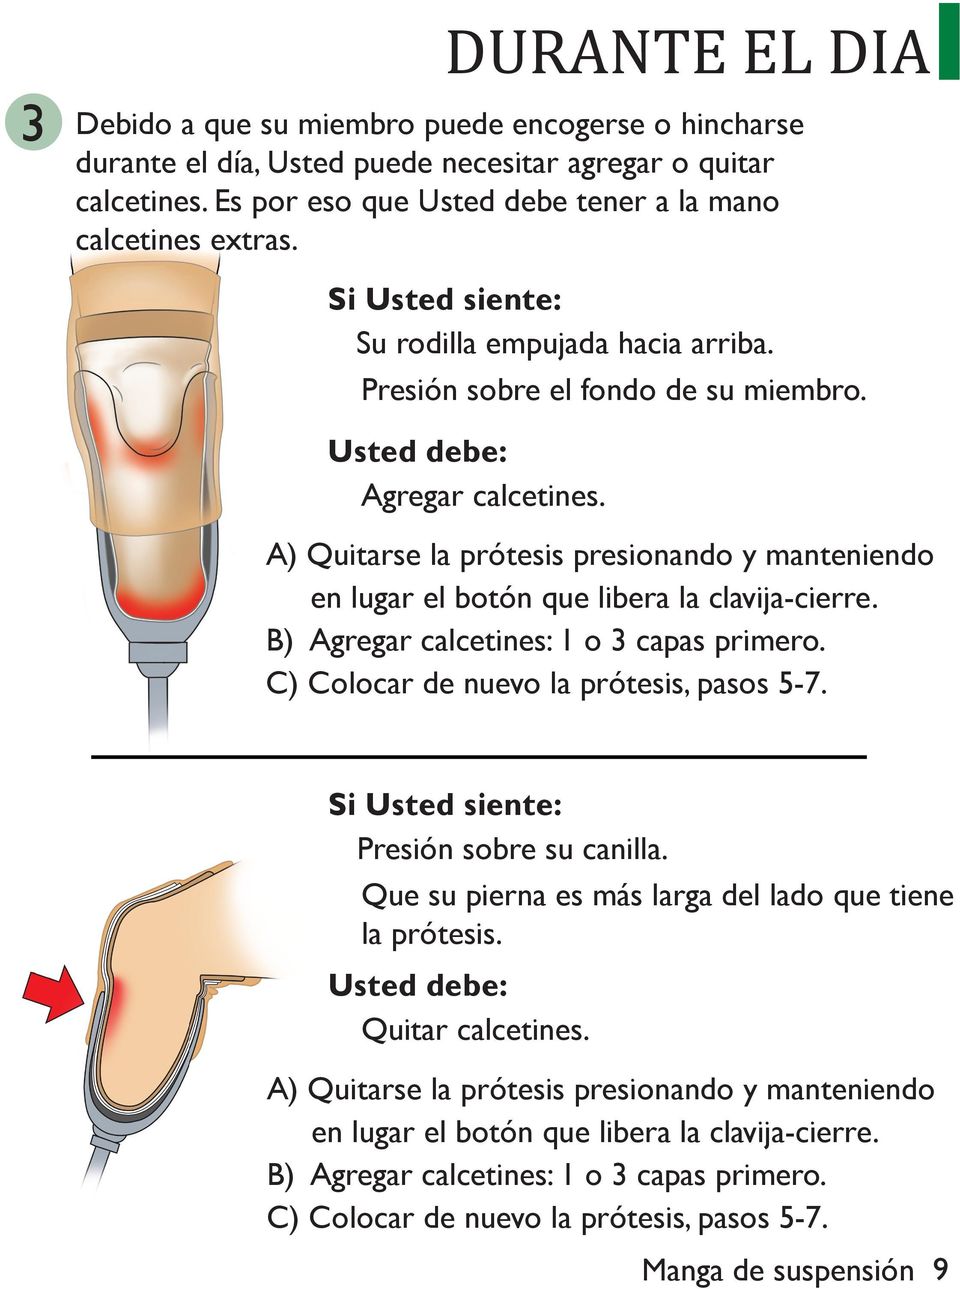 A) Quitarse la prótesis presionando y manteniendo en lugar el botón que libera la clavija-cierre. B) Agregar calcetines: o 3 capas primero. C) Colocar de nuevo la prótesis, pasos 5-7.